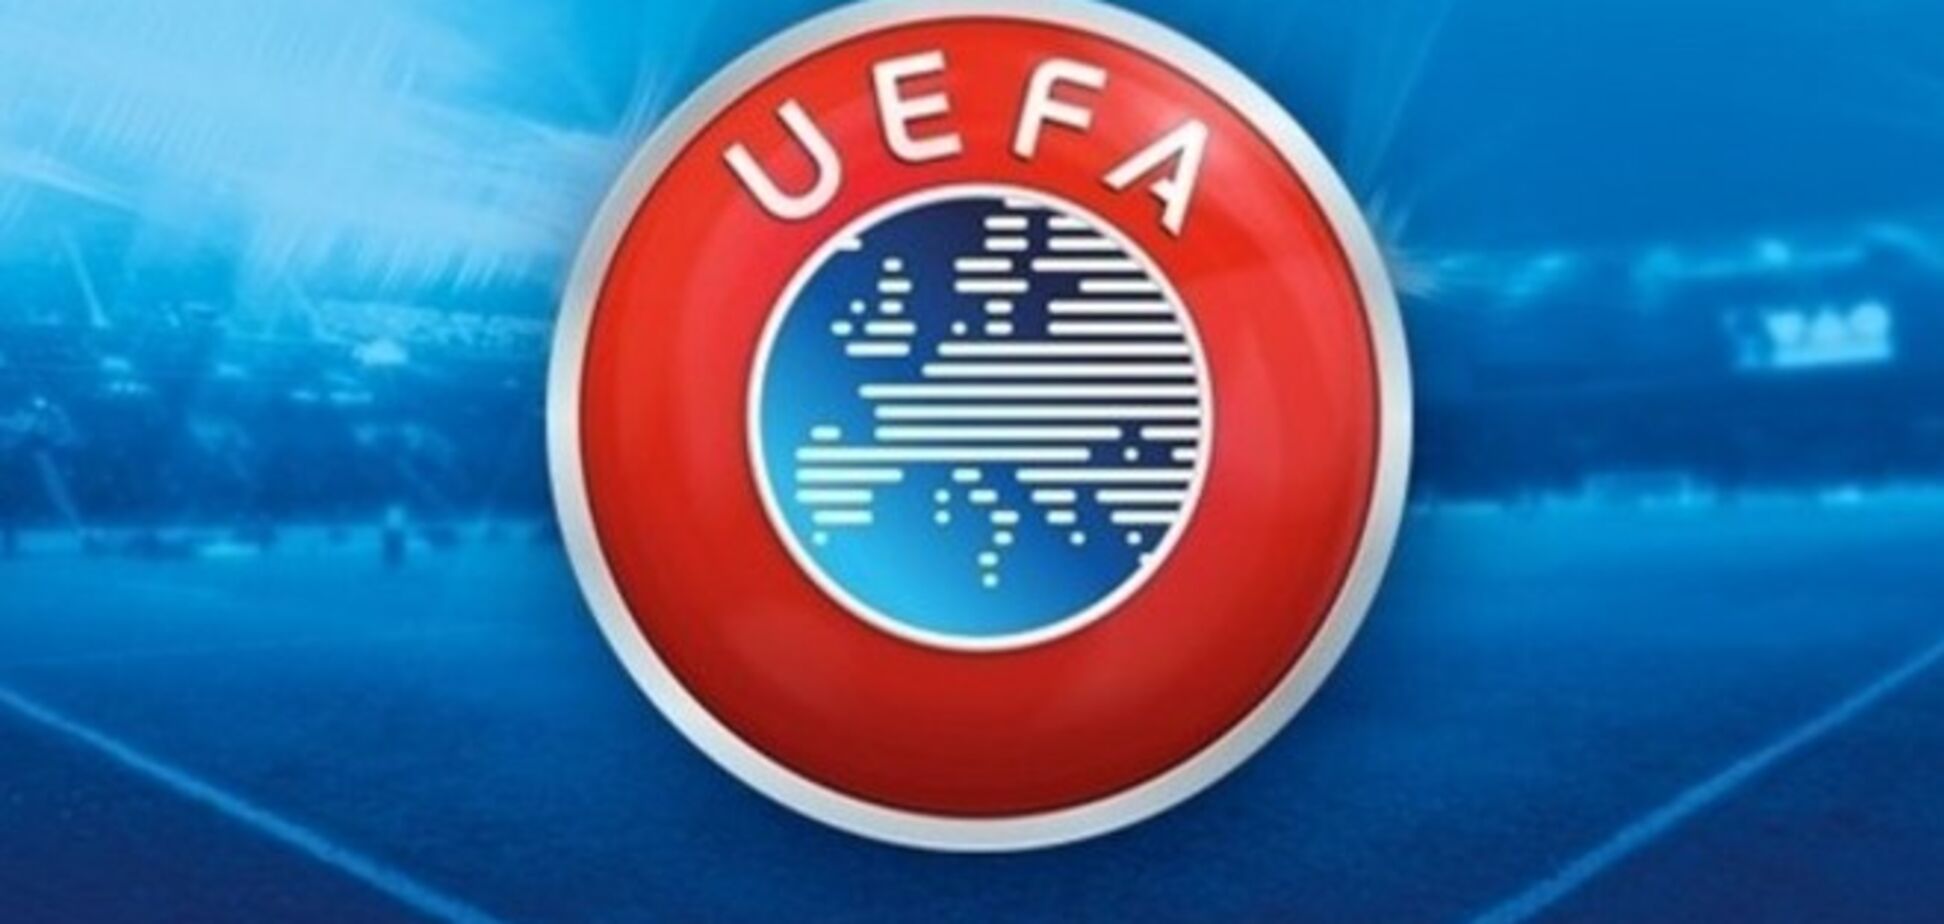 Футболист севастопольского клуба посмеялся над ФИФА и УЕФА